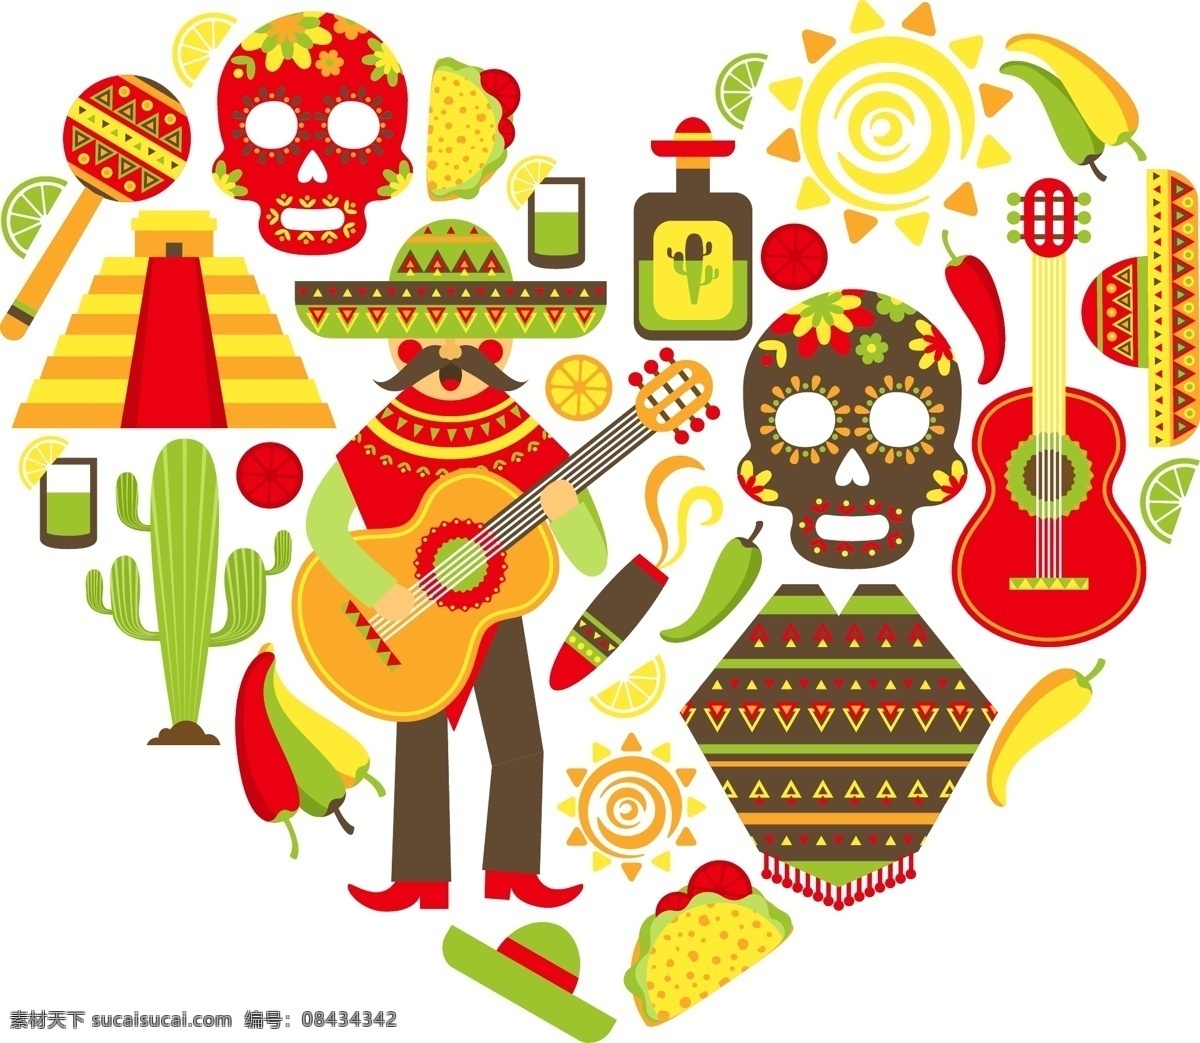 墨西哥 背景 食物 太阳 头骨 墙纸 颜色 吉他 丰富多彩 帽子 仙人掌 传统 辣椒 墨西哥食品